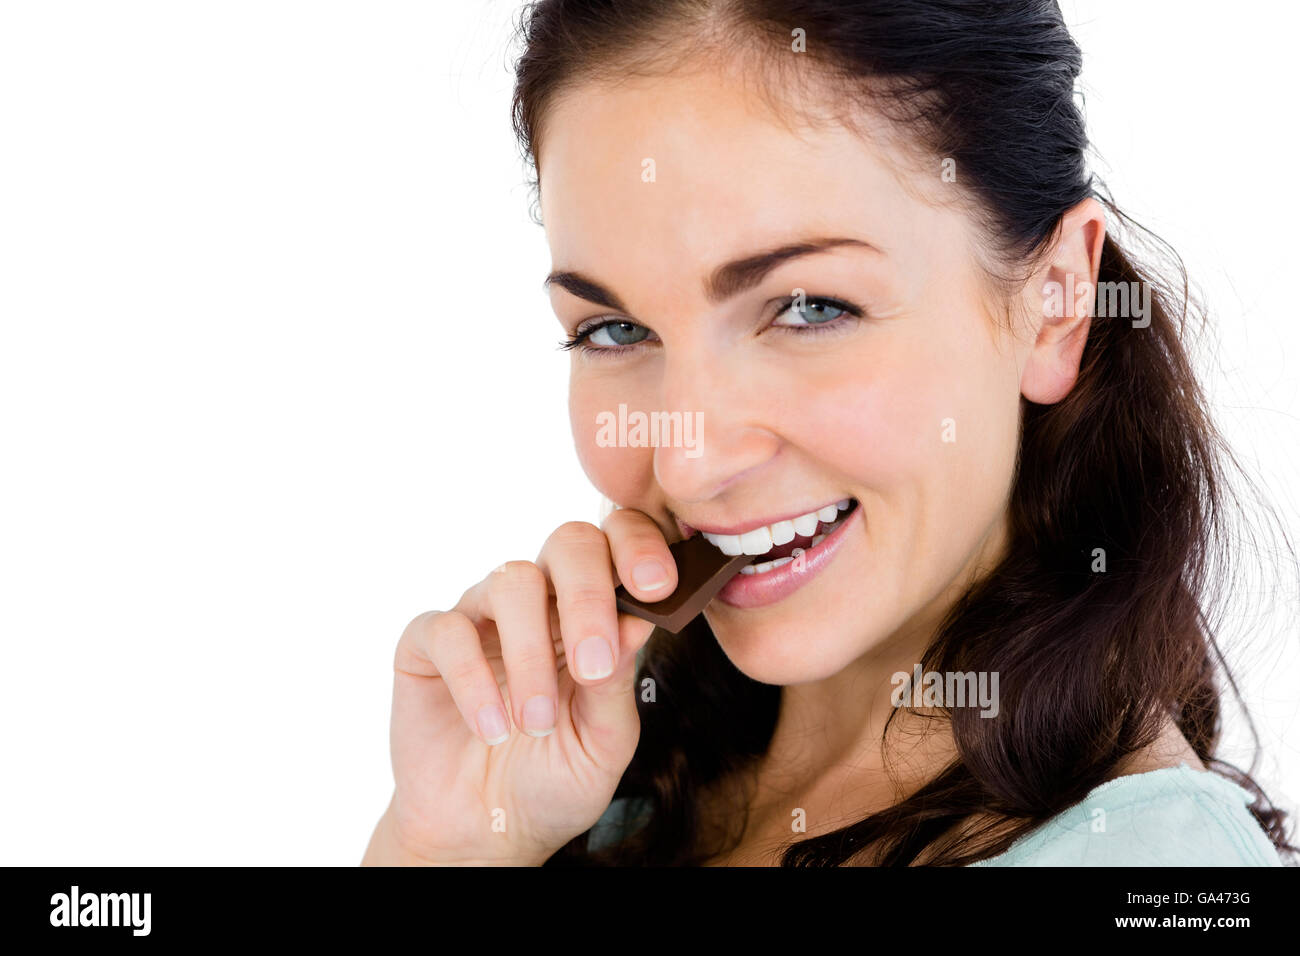 Close-up ritratto di donna sorridente mangiando cioccolato bar Foto Stock